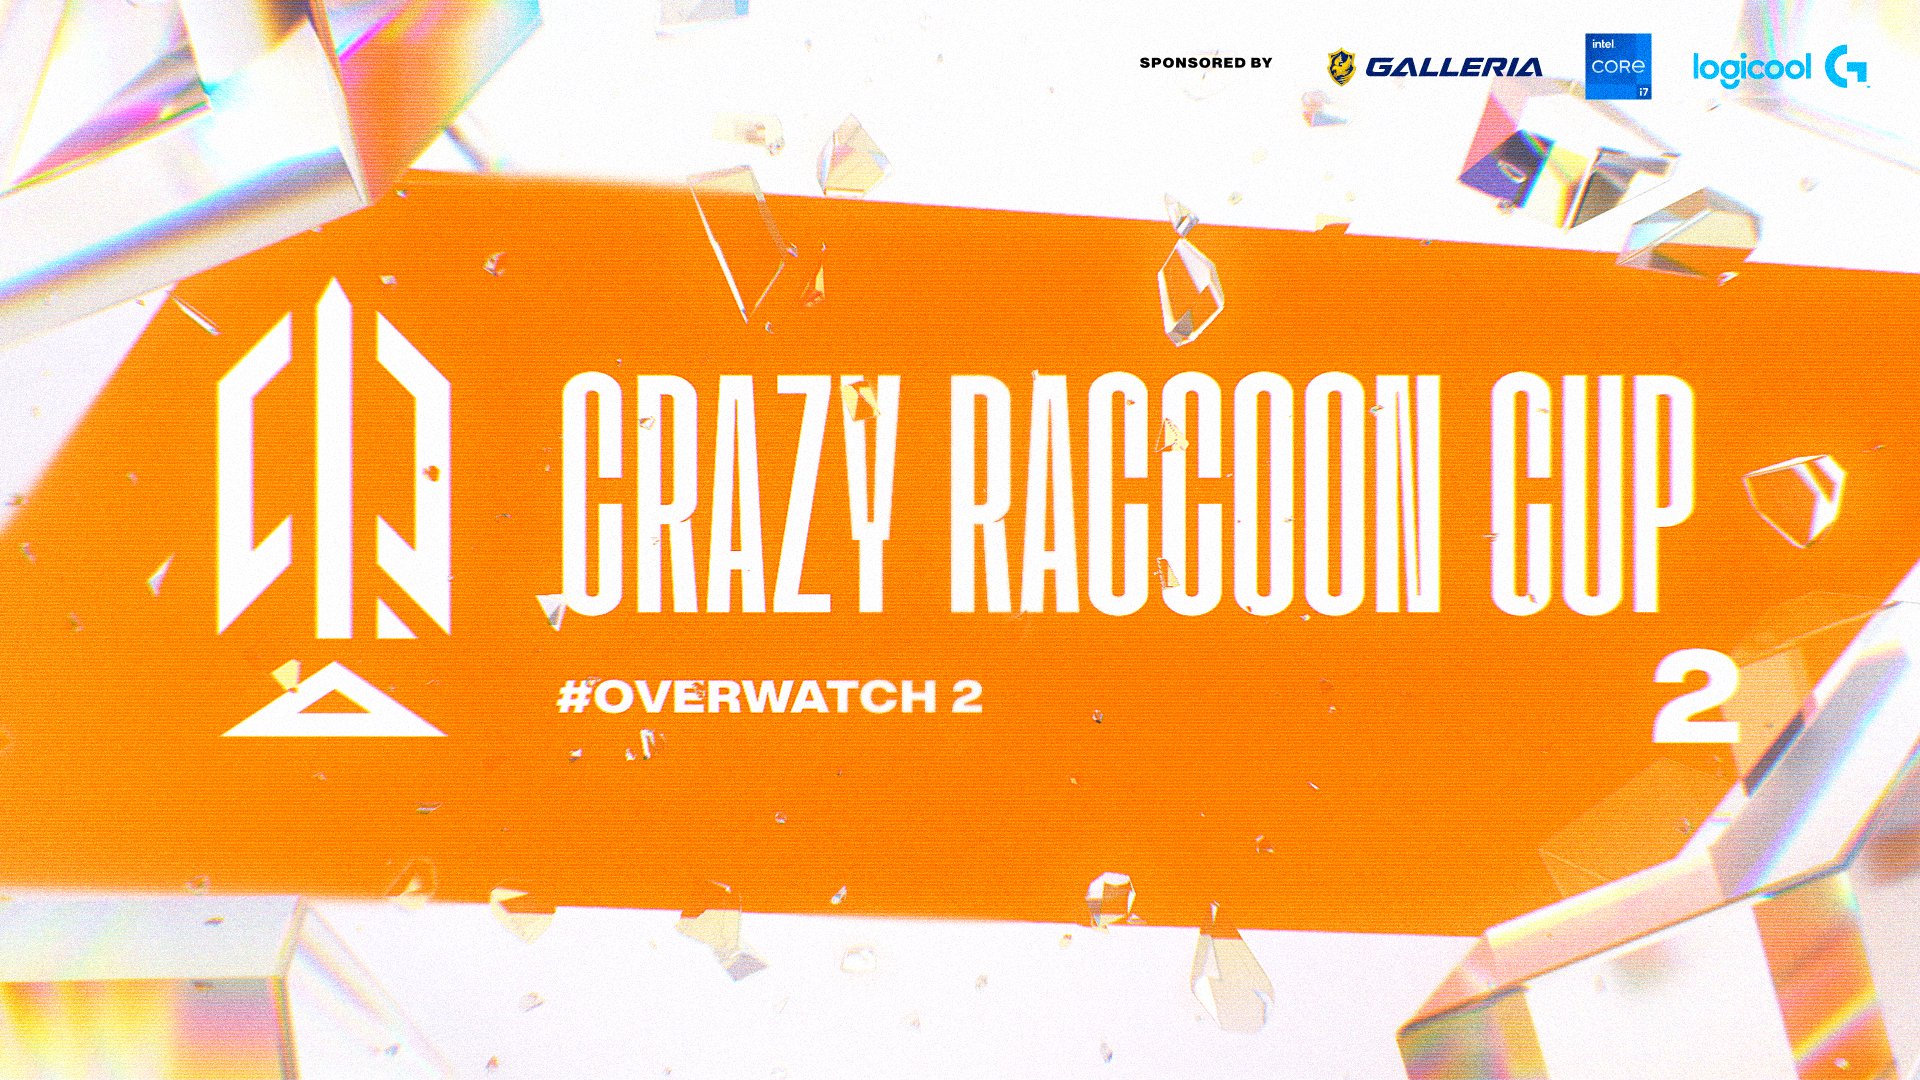 出演情報 – ta1yoが『第2回 Crazy Raccoon Cup Overwatch2』に出場